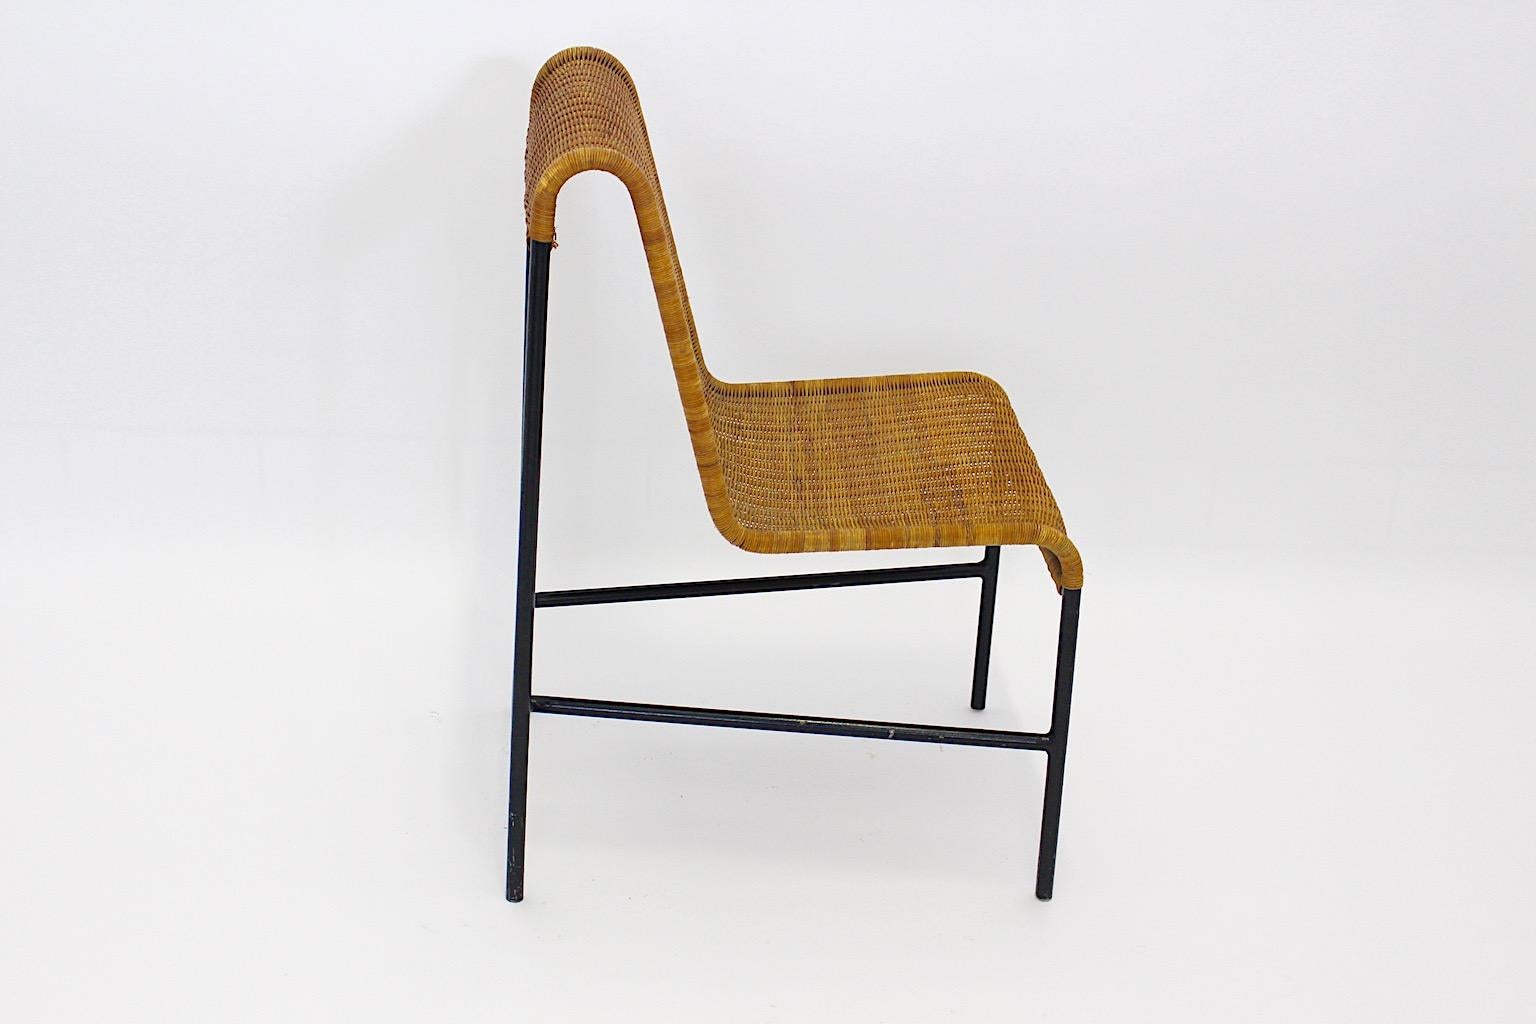 Organic Modern Mid Century Modern Vintage Stuhl oder Beistellstuhl aus schwarz lackiertem Stahlrohr und Korbgeflecht. von Harold Cohen und Davis Pratt, 1953 USA.
Dieser Stuhl oder Beistellstuhl ist ein wunderbares Beispiel für organisches modernes